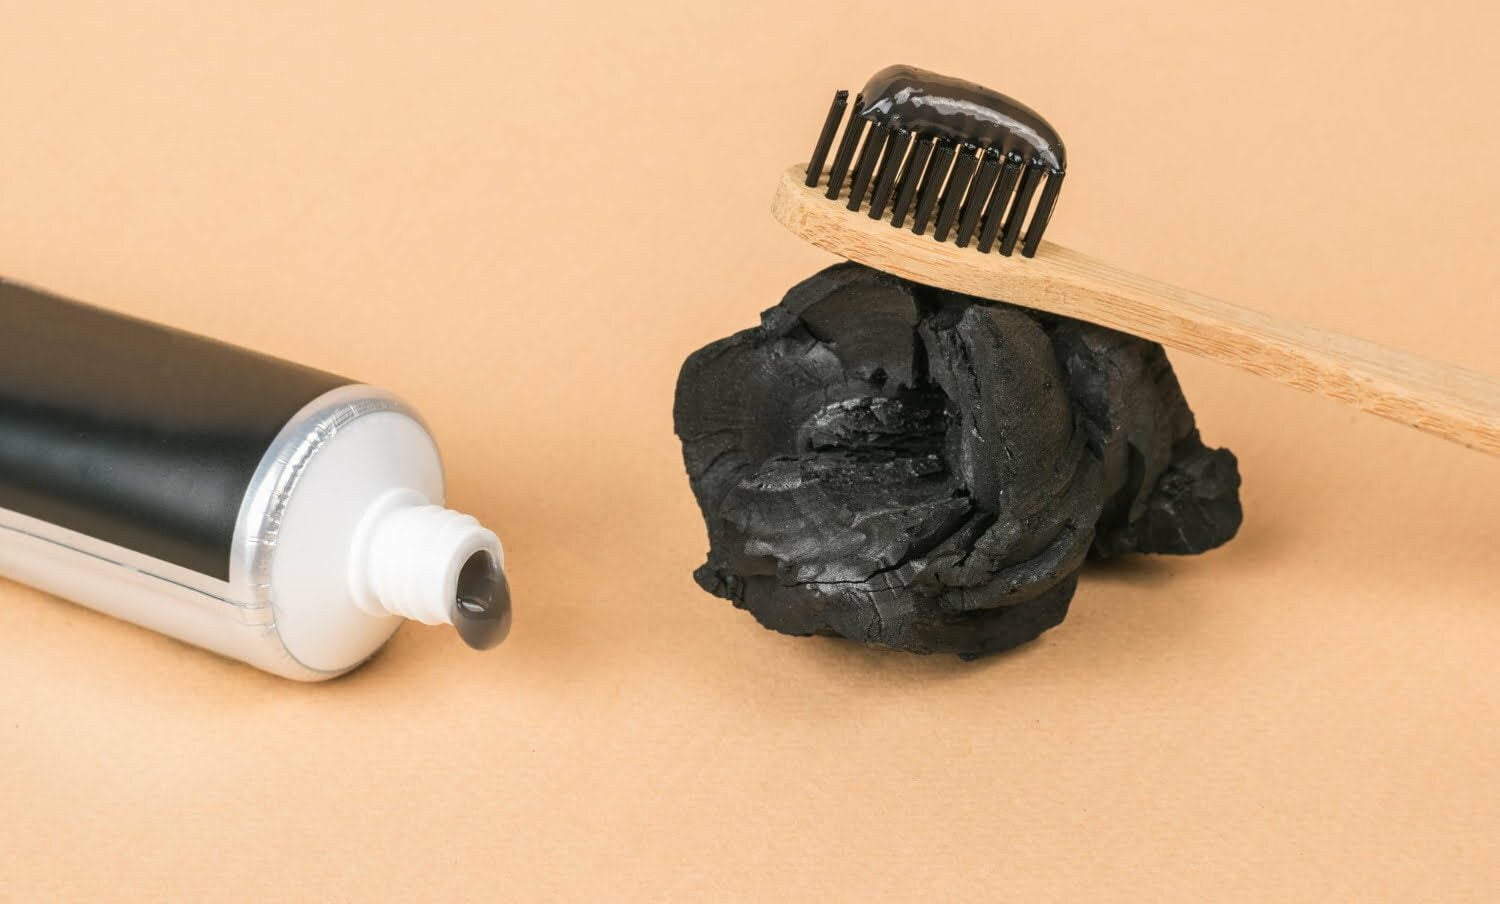 Un tubo de pasta de dientes con la adición de carbón y un cepillo de dientes con pasta dental de carbón activado